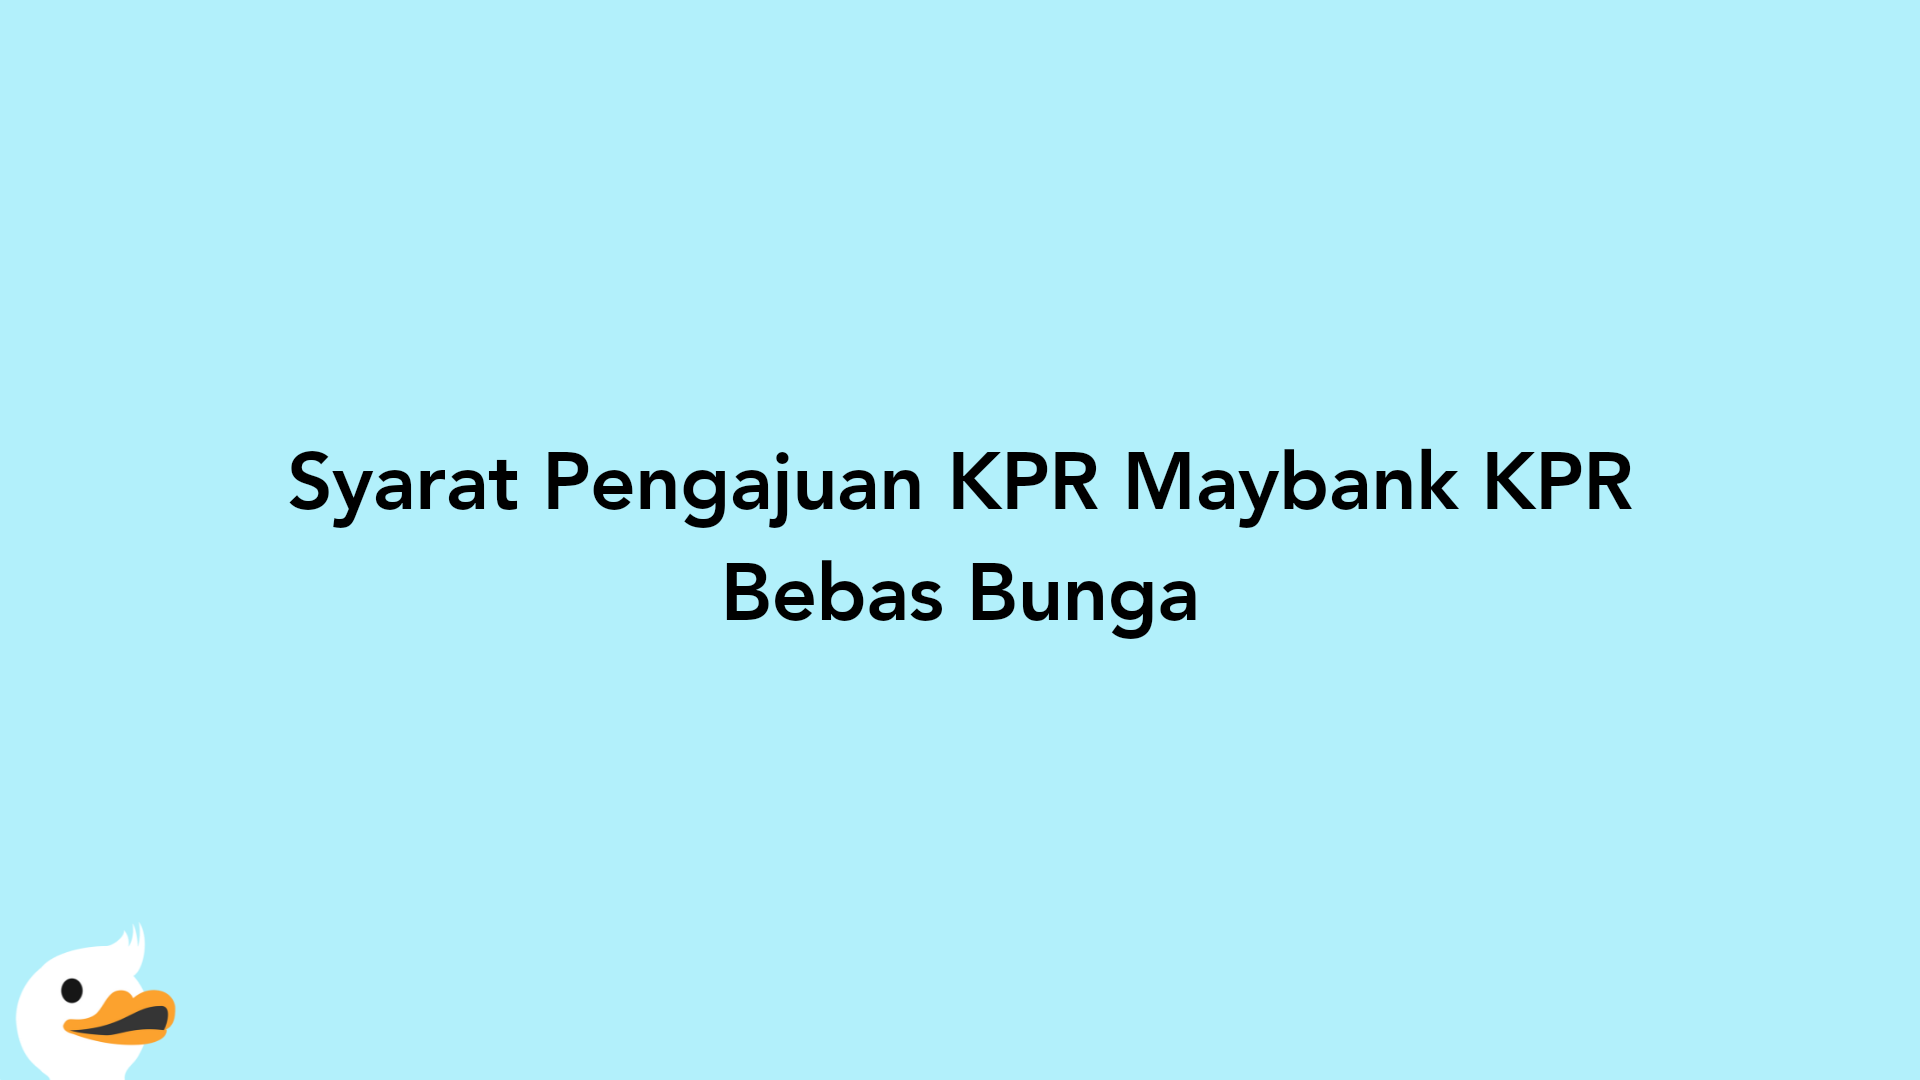 Syarat Pengajuan KPR Maybank KPR Bebas Bunga